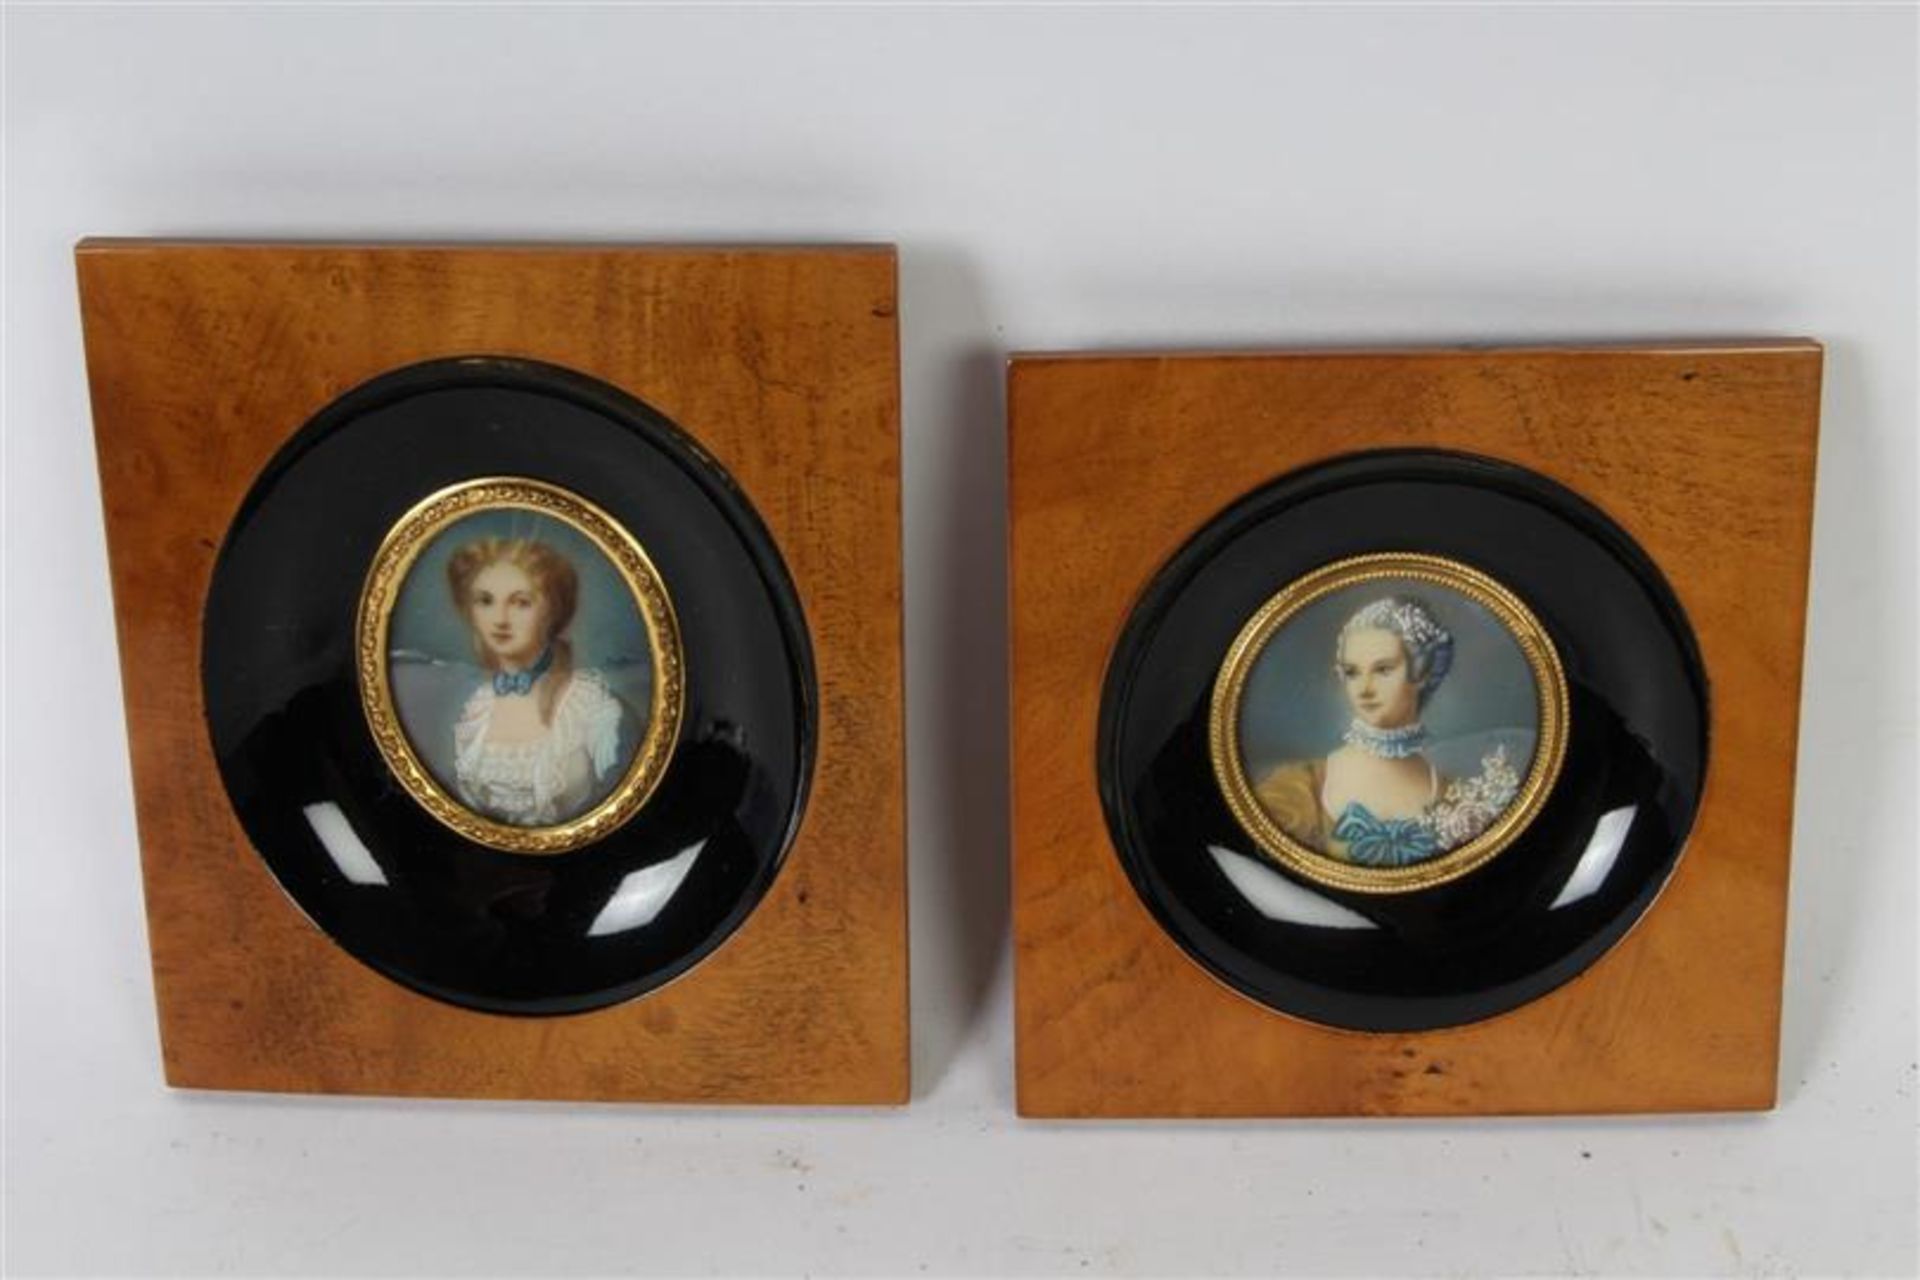 Twee miniatuurportretjes. HxB: 11 x 10.5 cm en 12.5 x 10.7cm.